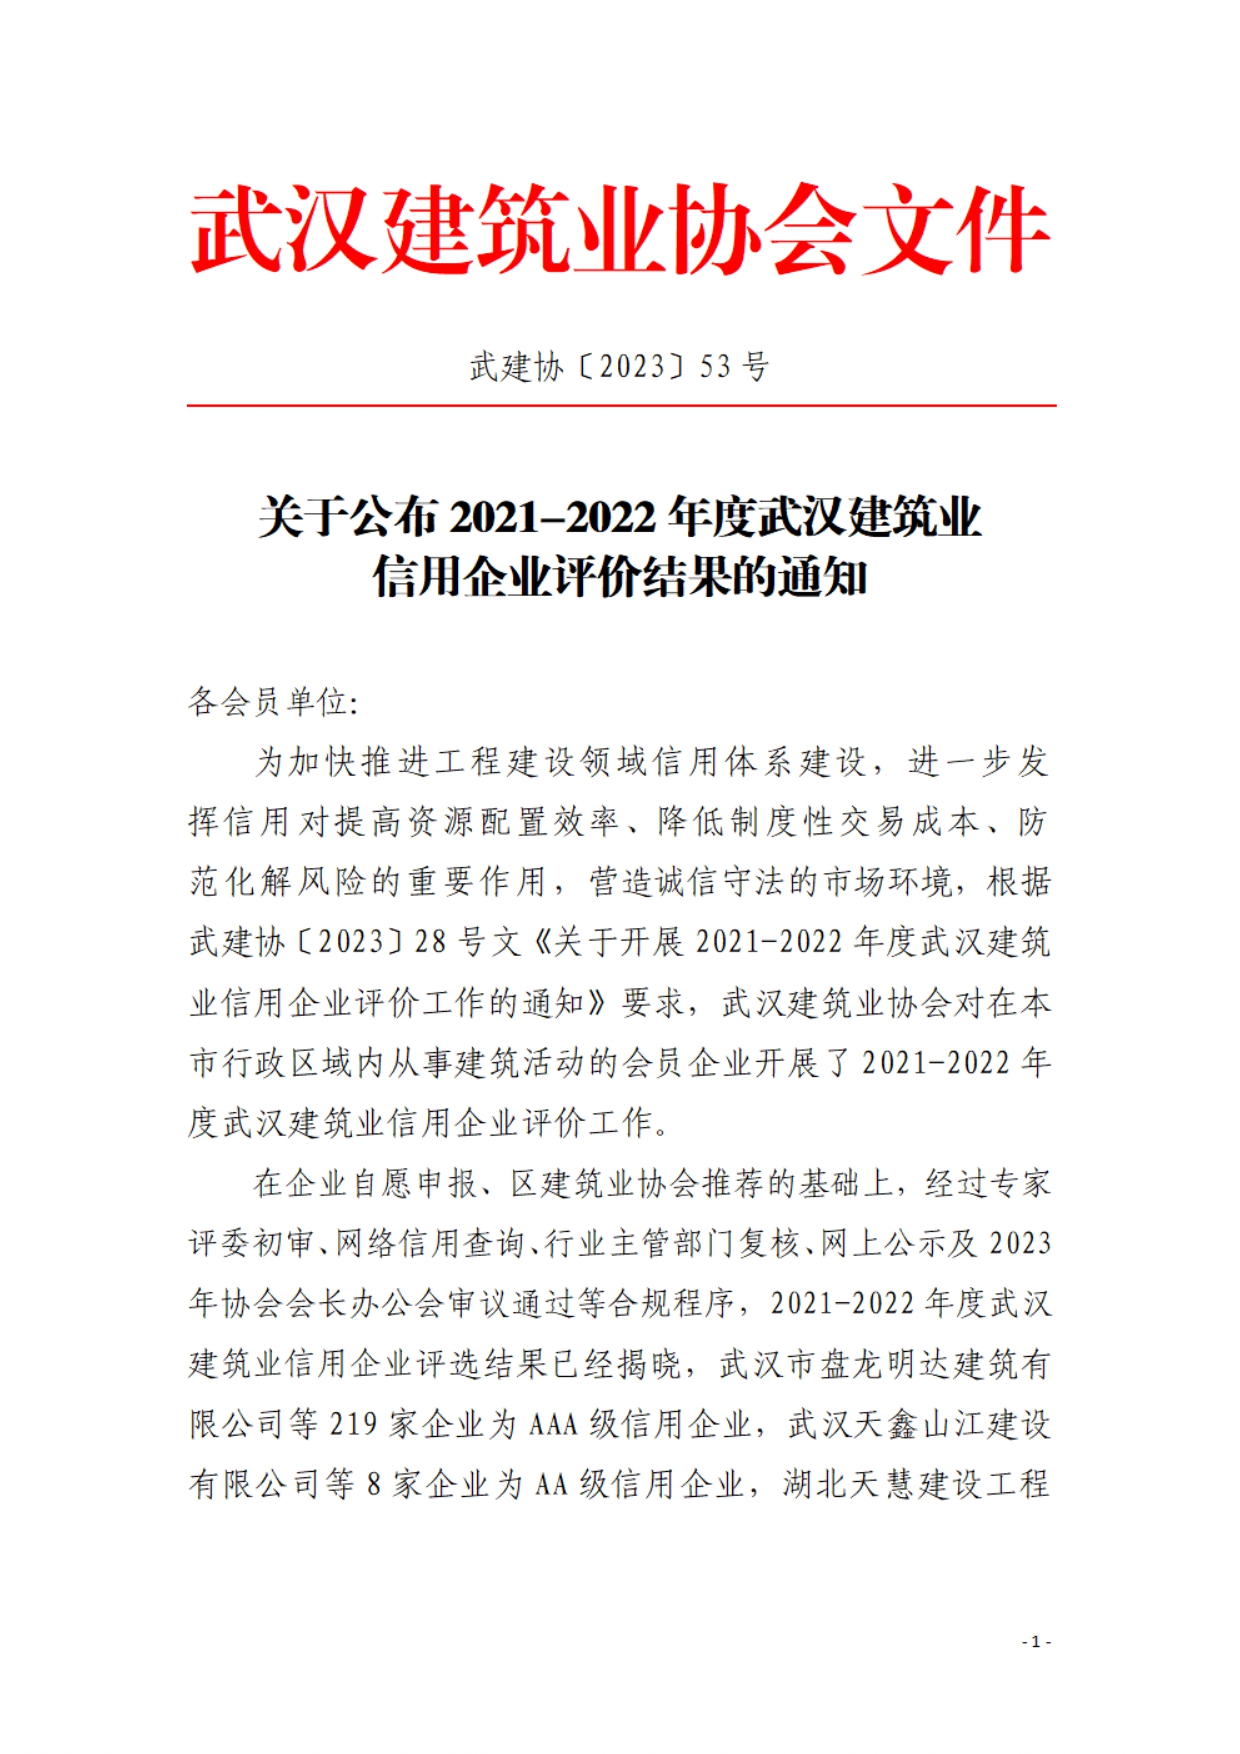 2021-2022年度武汉建筑行业信用企业_page-0001.jpg